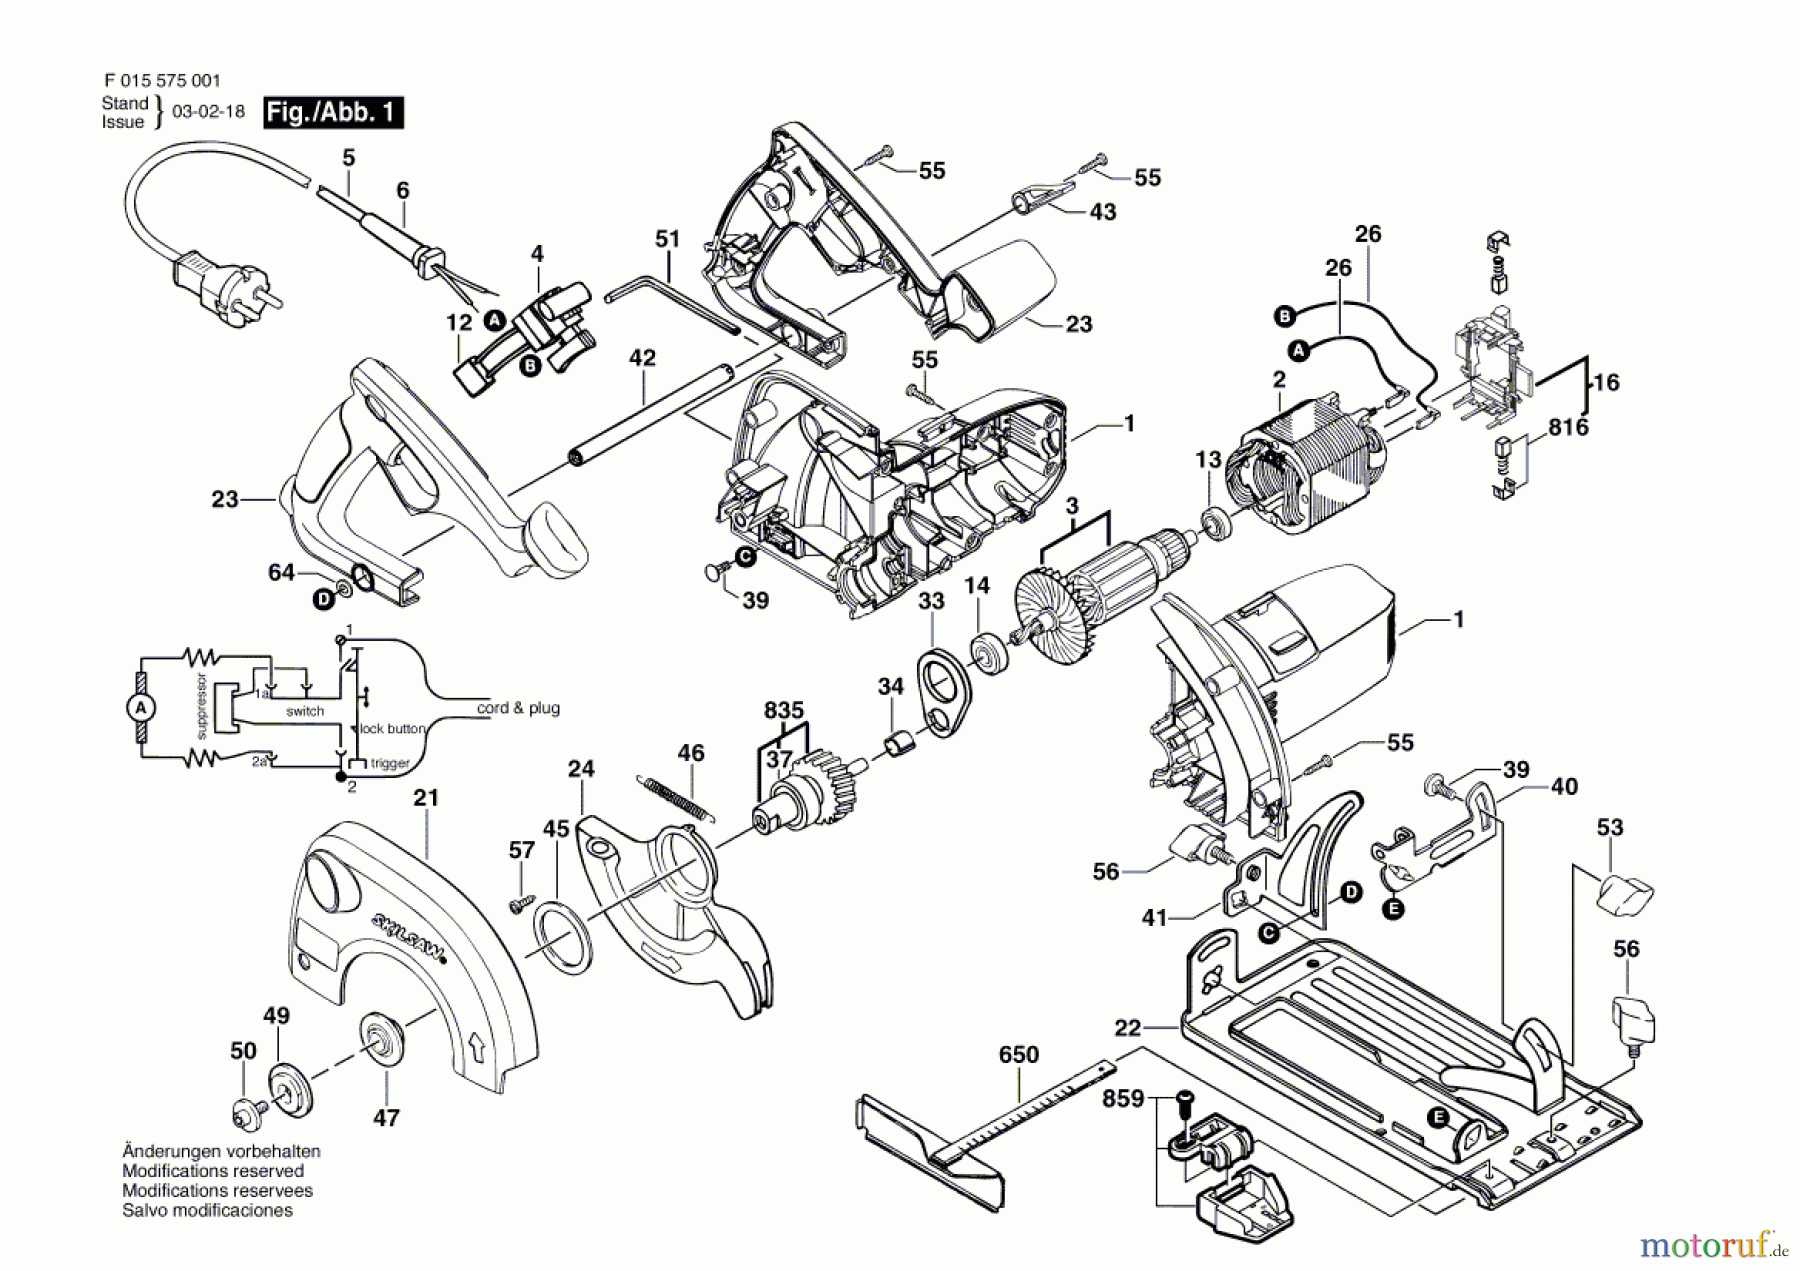  Bosch Werkzeug Handkreissäge 5150 Seite 1